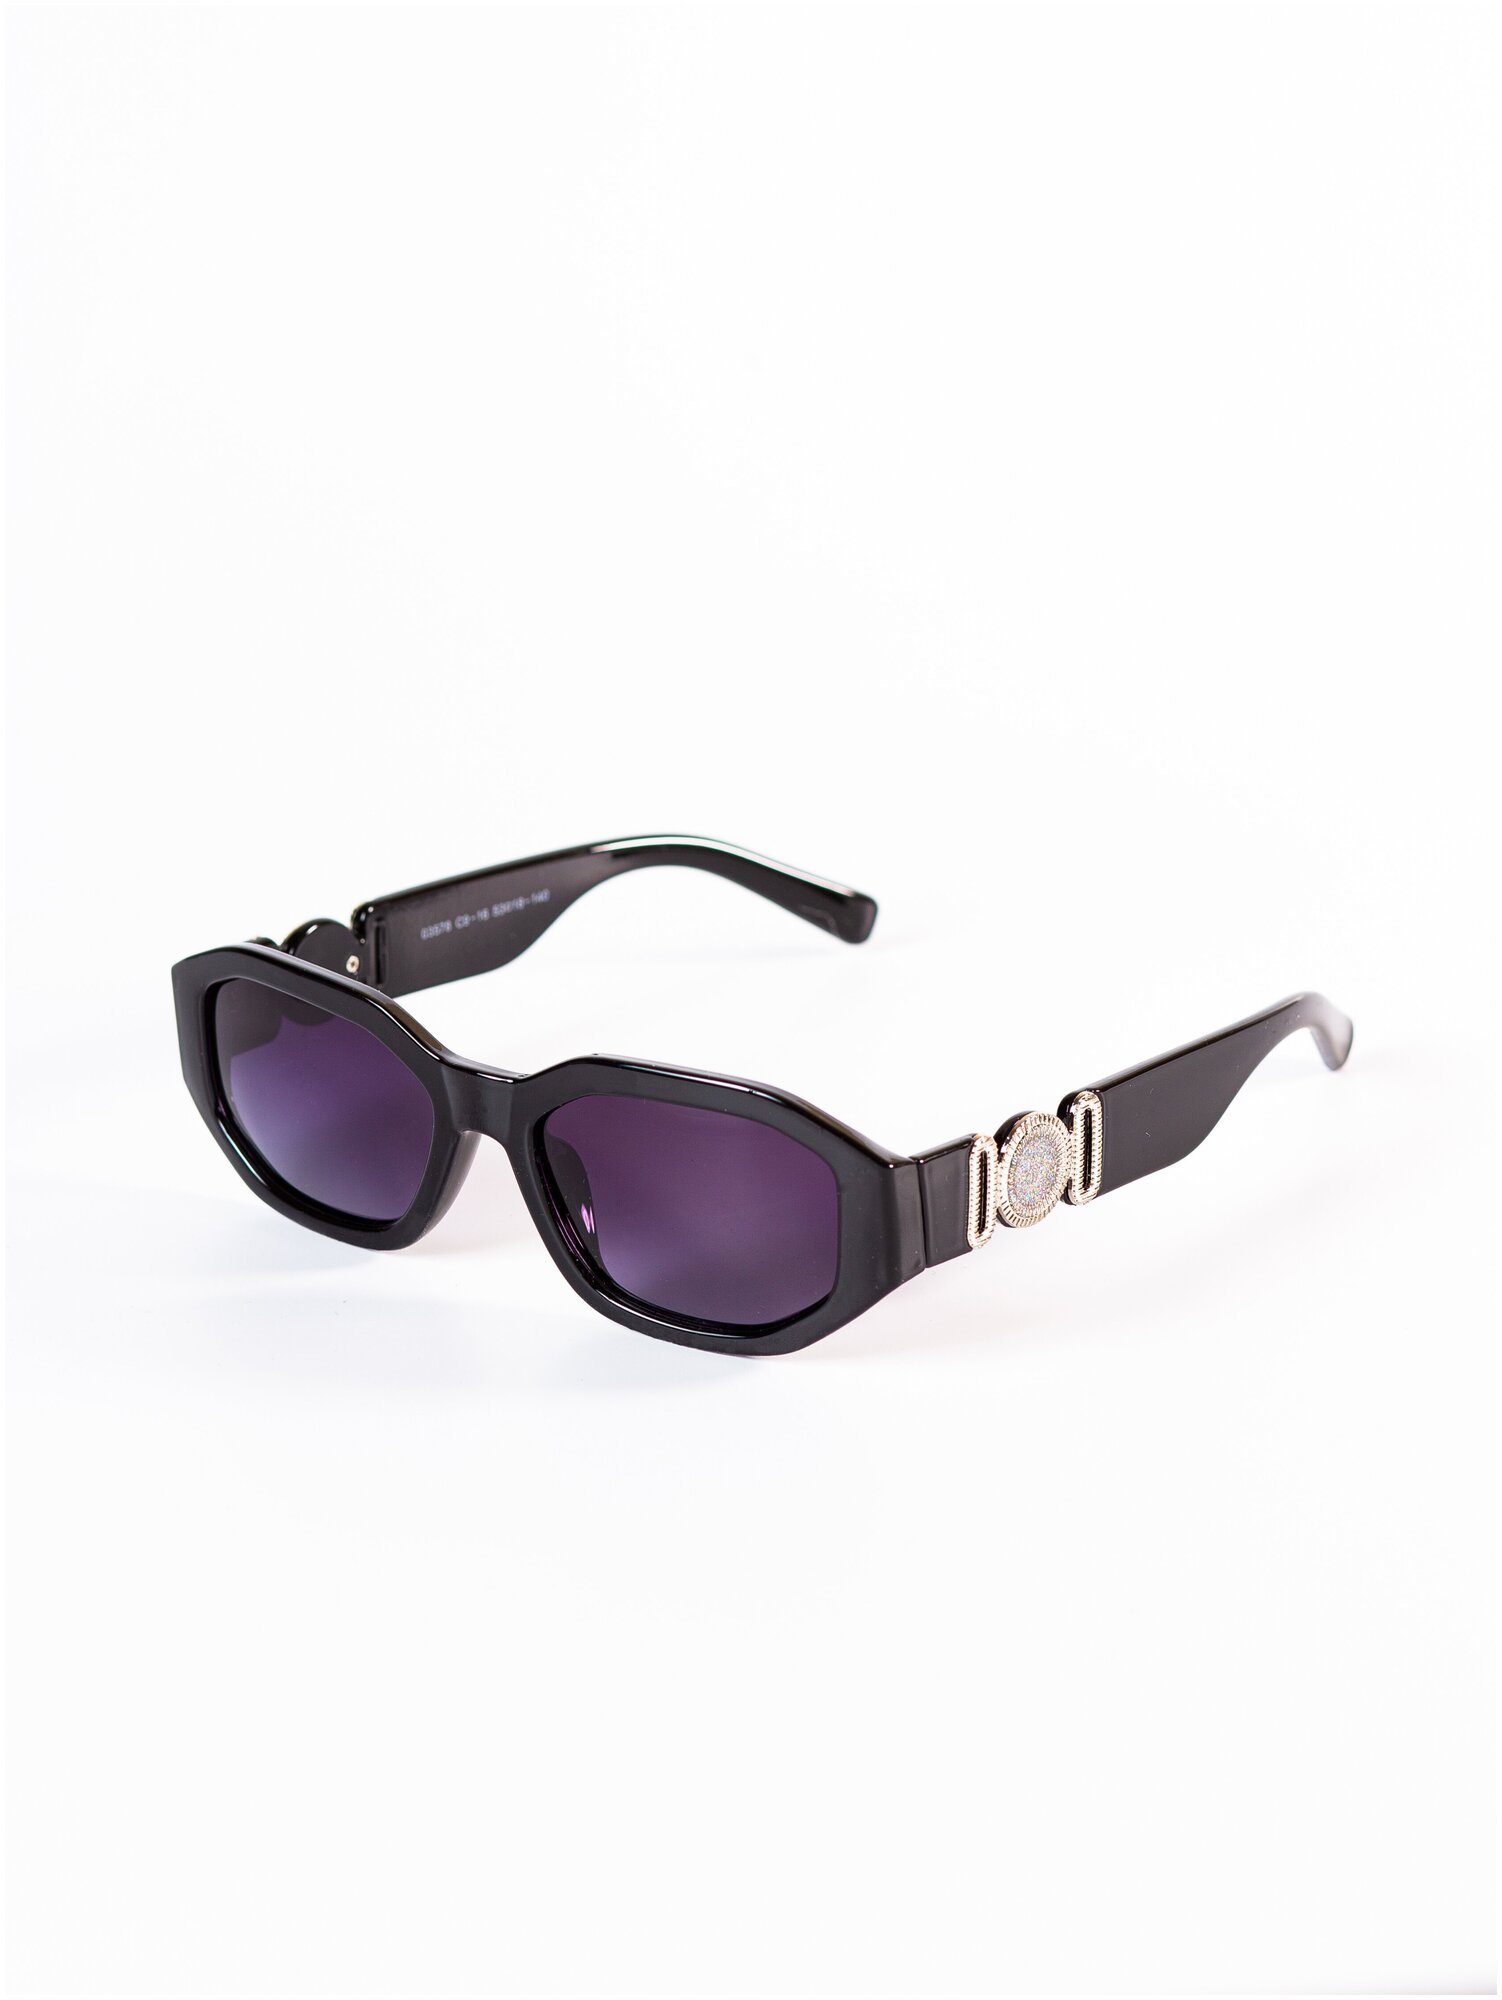 Солнцезащитные очки женские / Оправа овальная / Стильные очки / Ультрафиолетовый фильтр / UV400 / Модный аксессуар/ 230322245